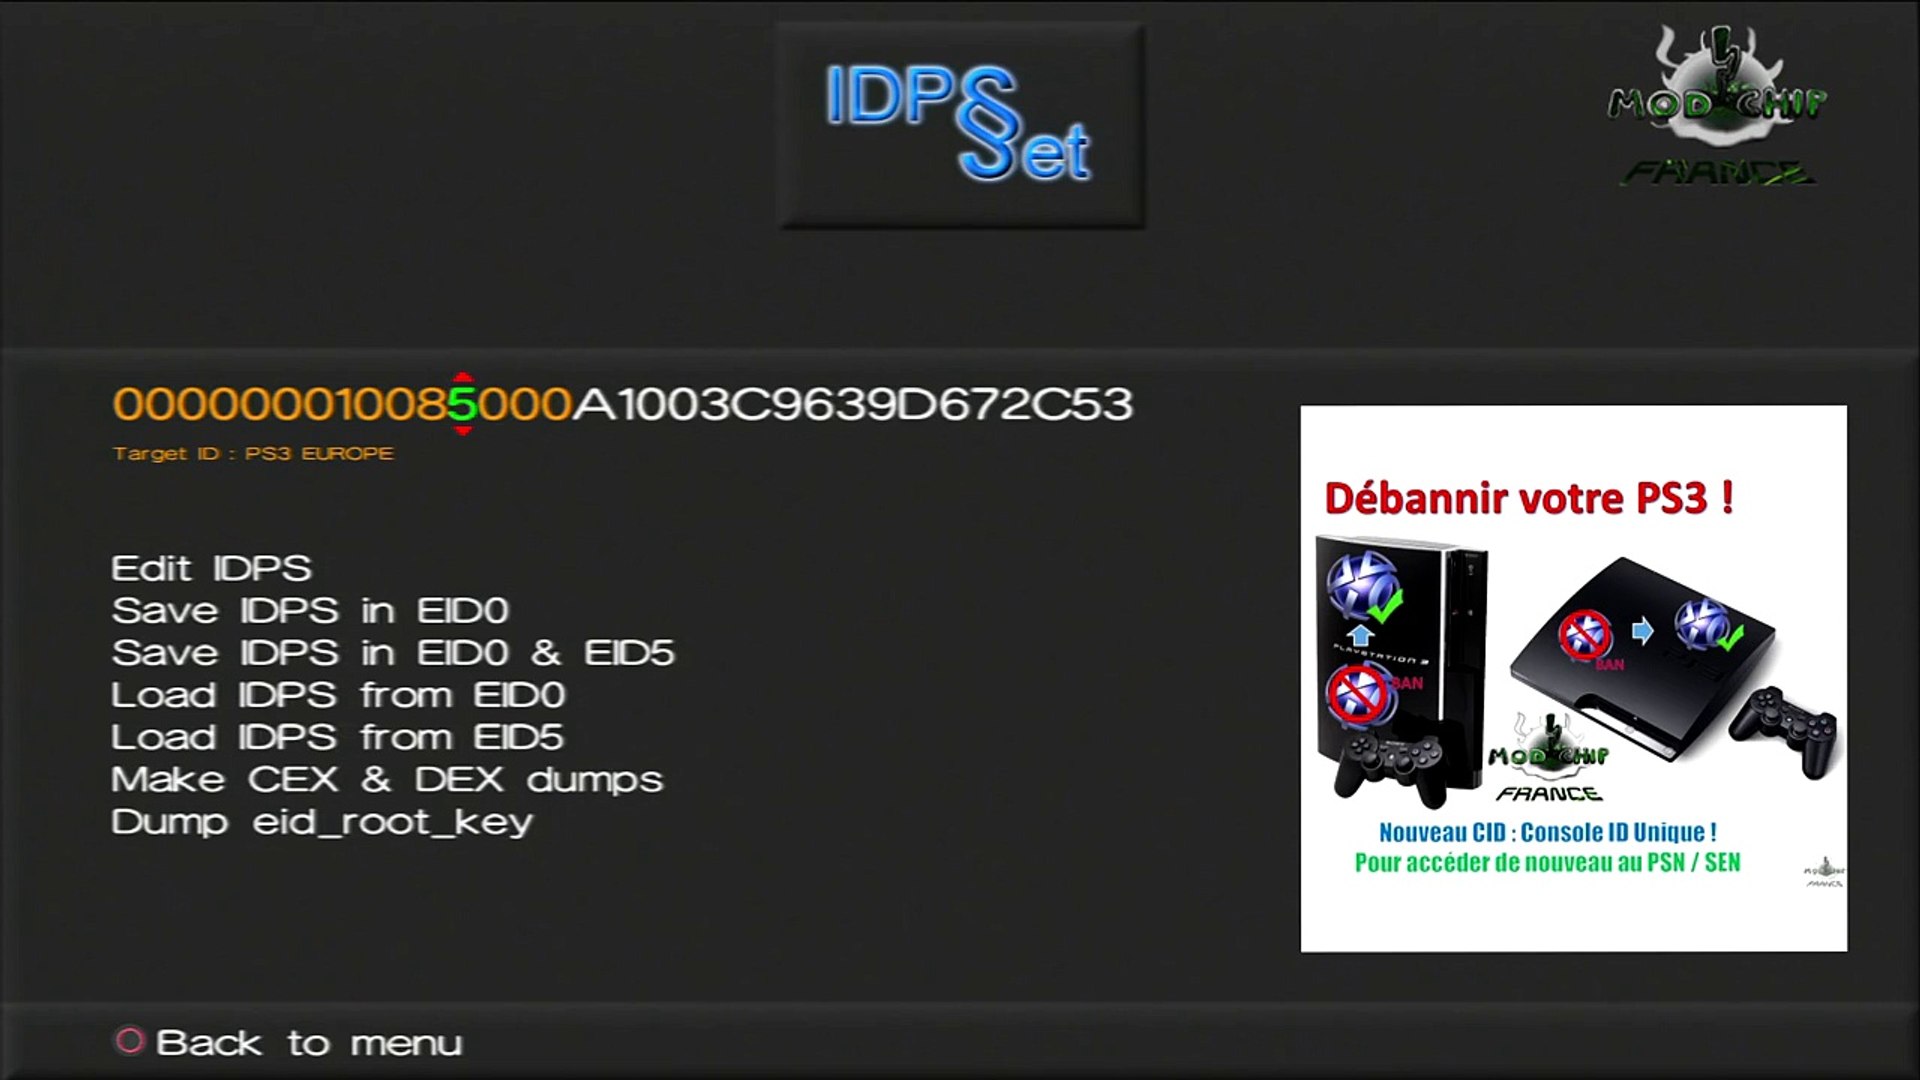 Tuto debannir une PS3 définitivement avec IDPset. PS3 jailbreak - Vidéo  Dailymotion